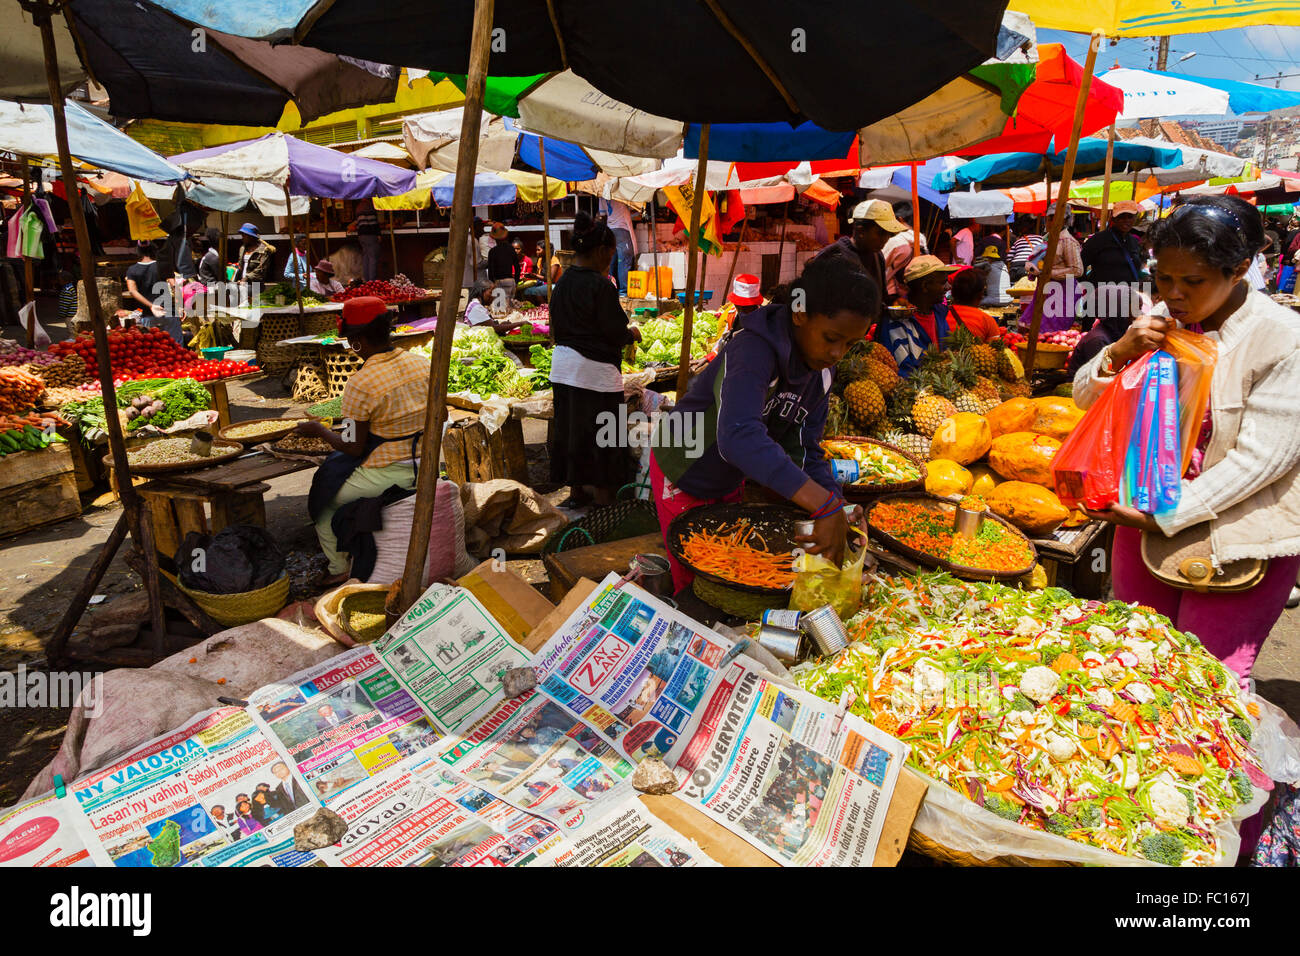 Analakely Market, Antananarivo, Madagascar Stock Photo